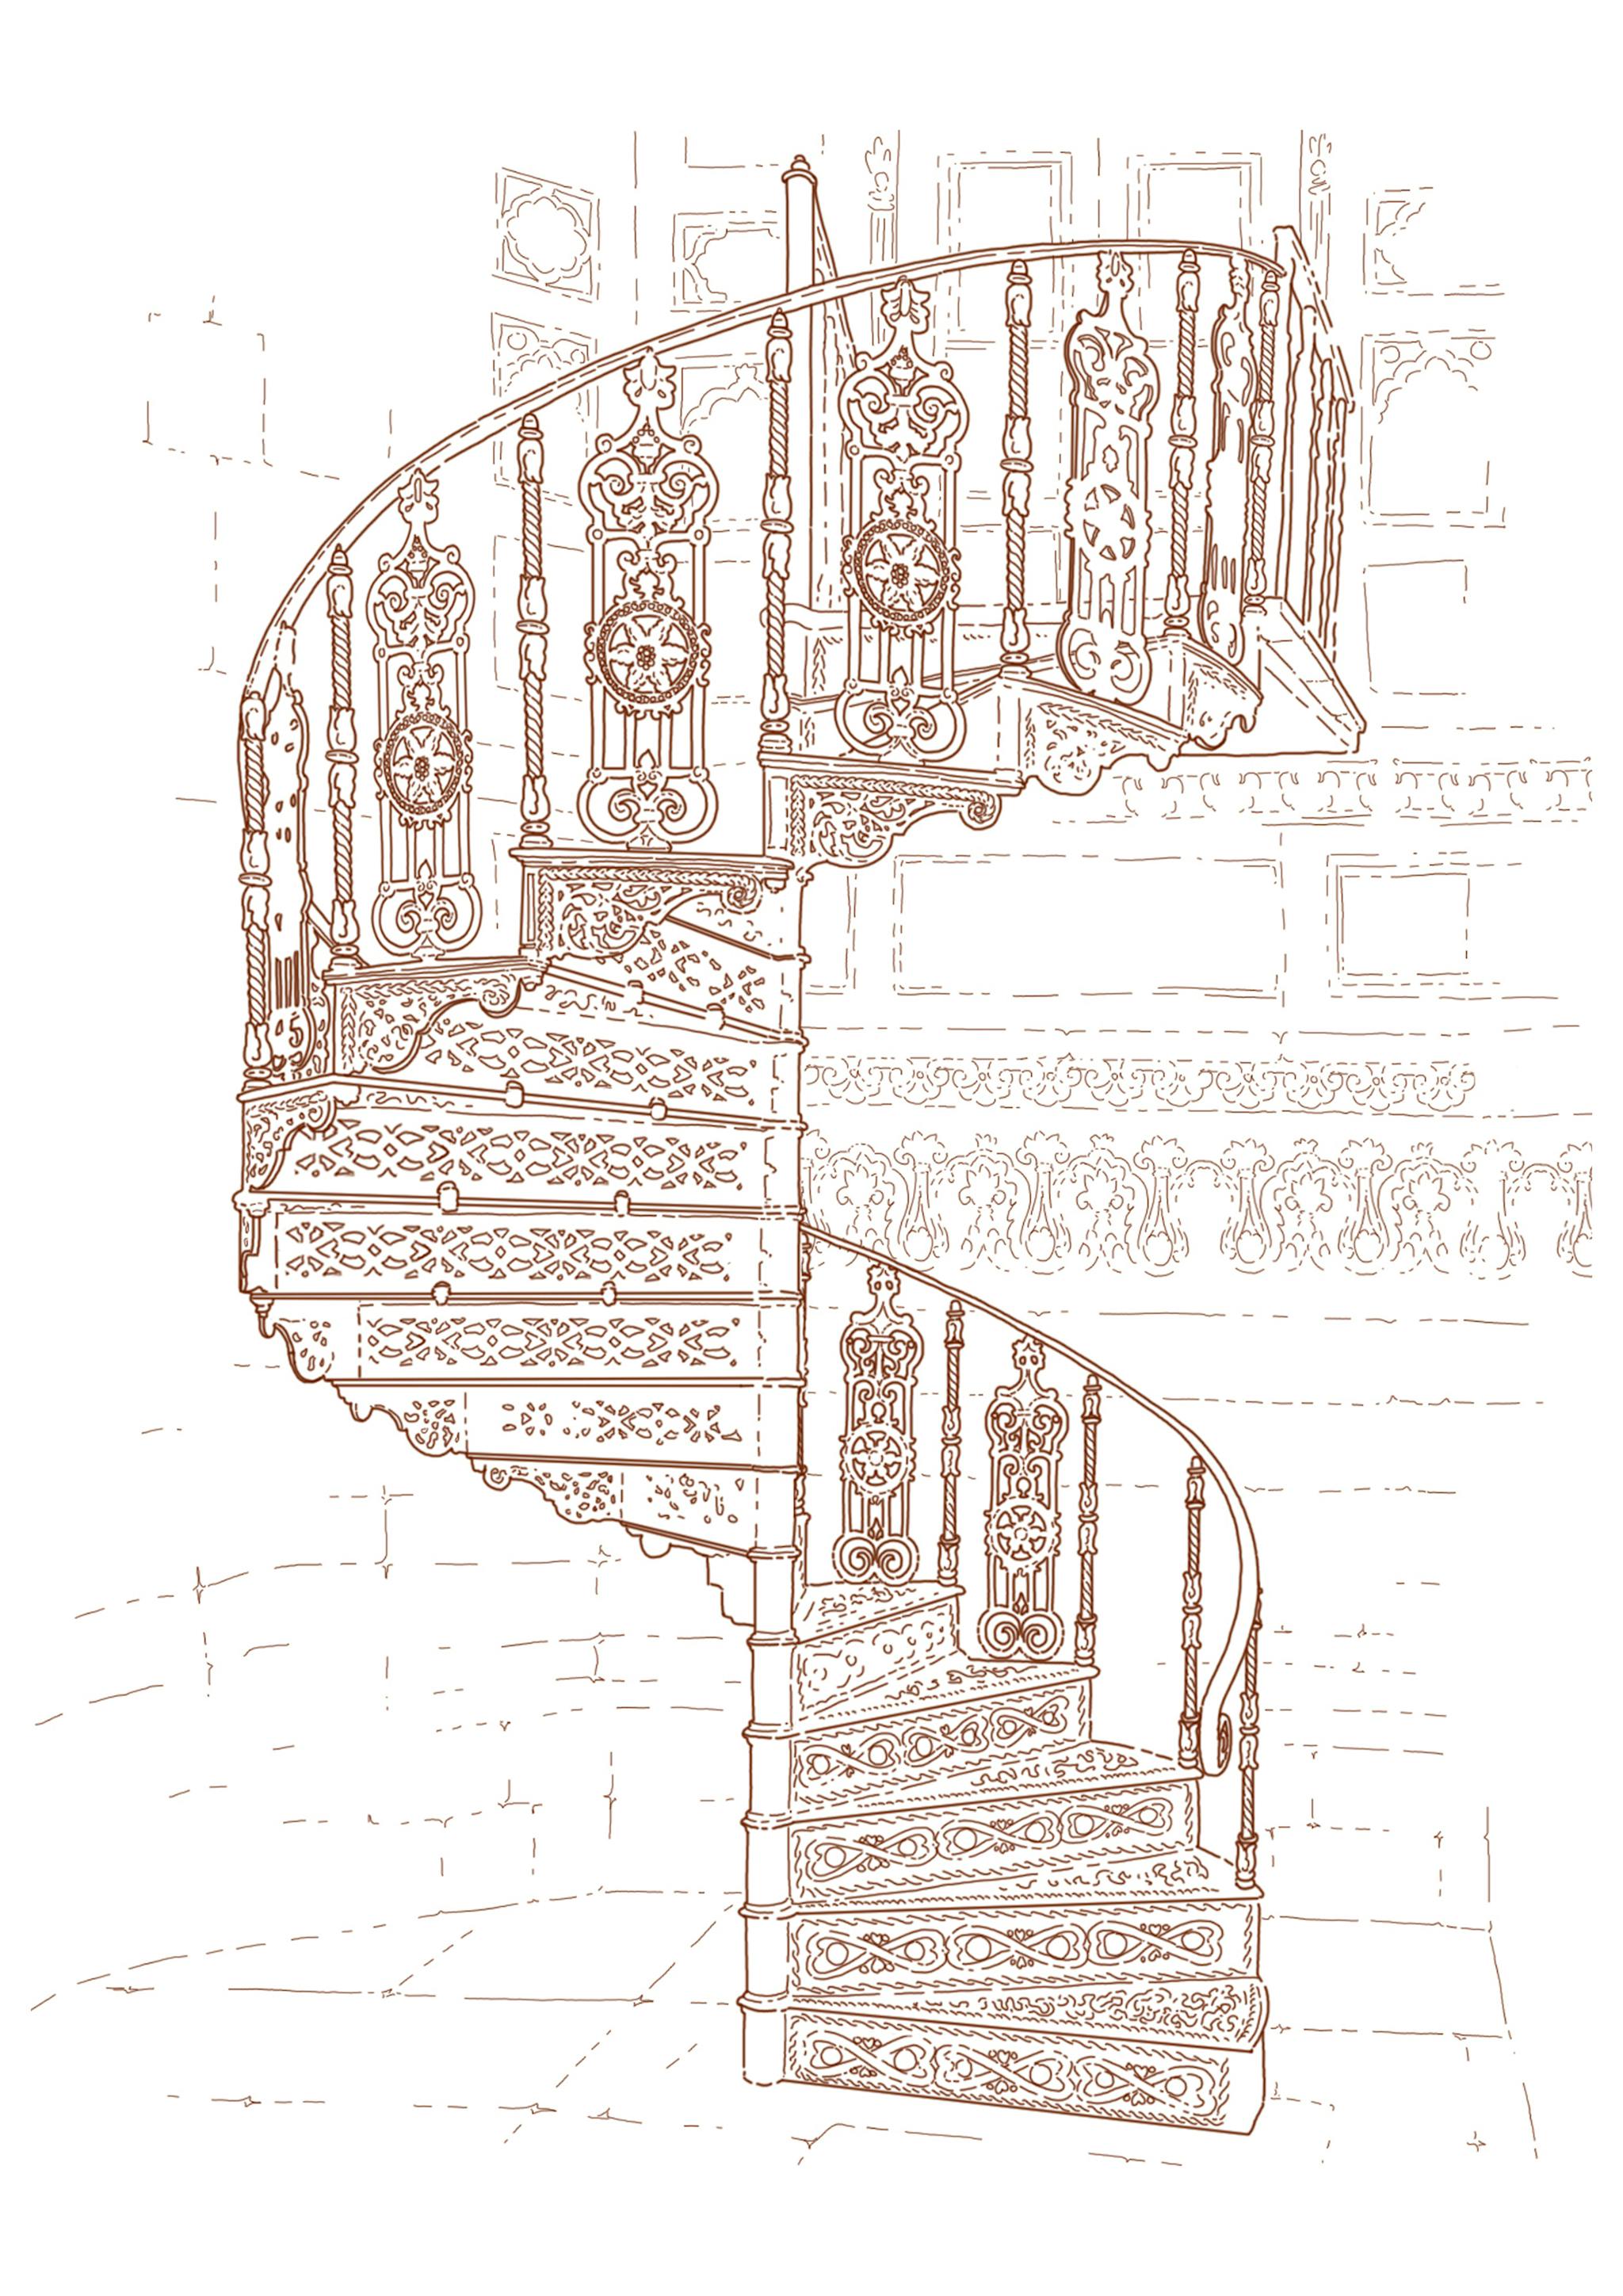 Illustration au trait ocre sur fond blanc d'un escalier en colimasson trés ornementé.